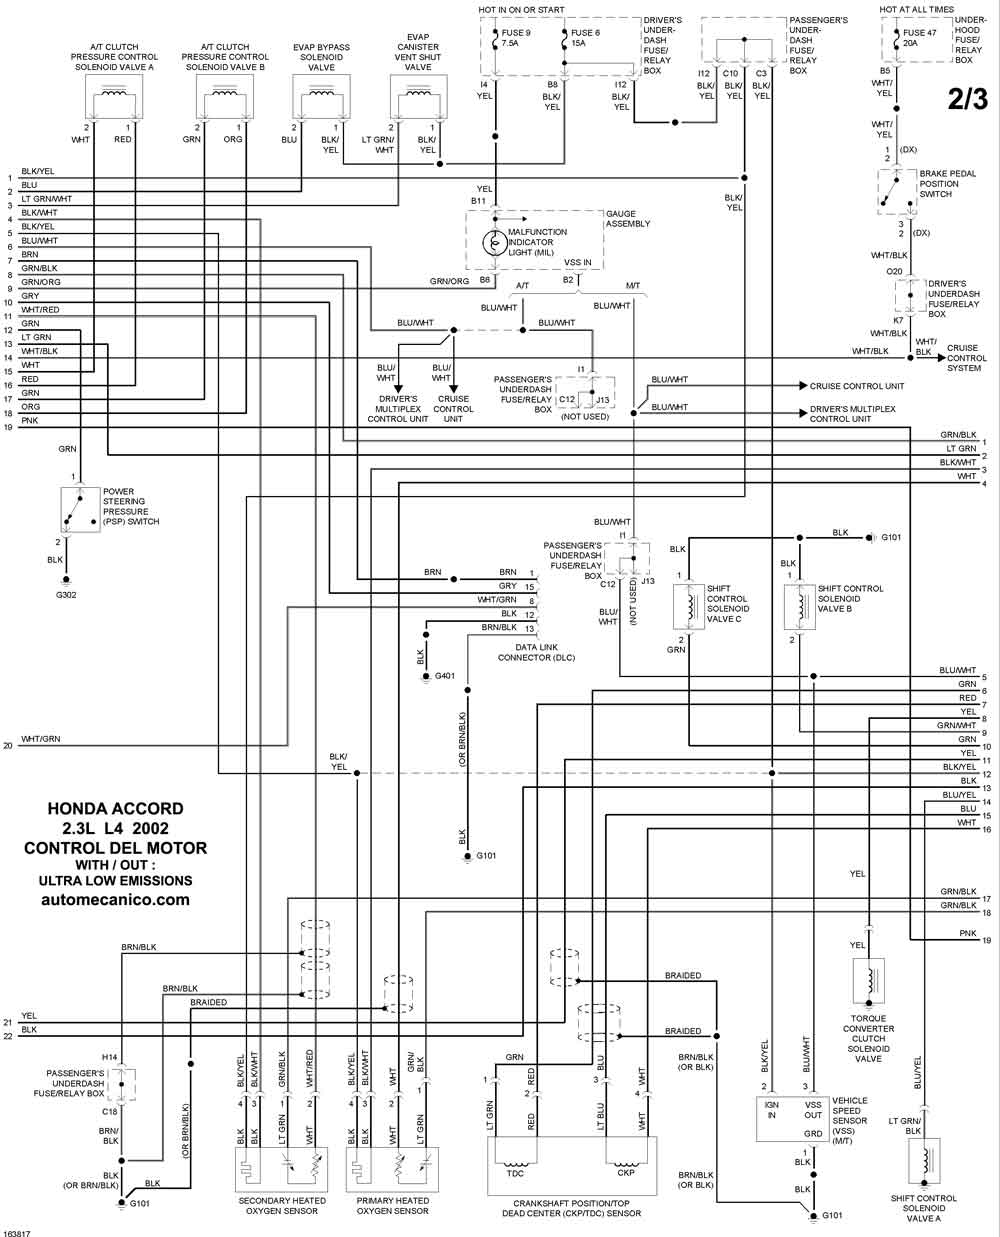 HONDA - Diagramas control del motor 2002 - Graphics - Esquemas | Vehiculos  - Motores - Componentes | Mecanica automotriz